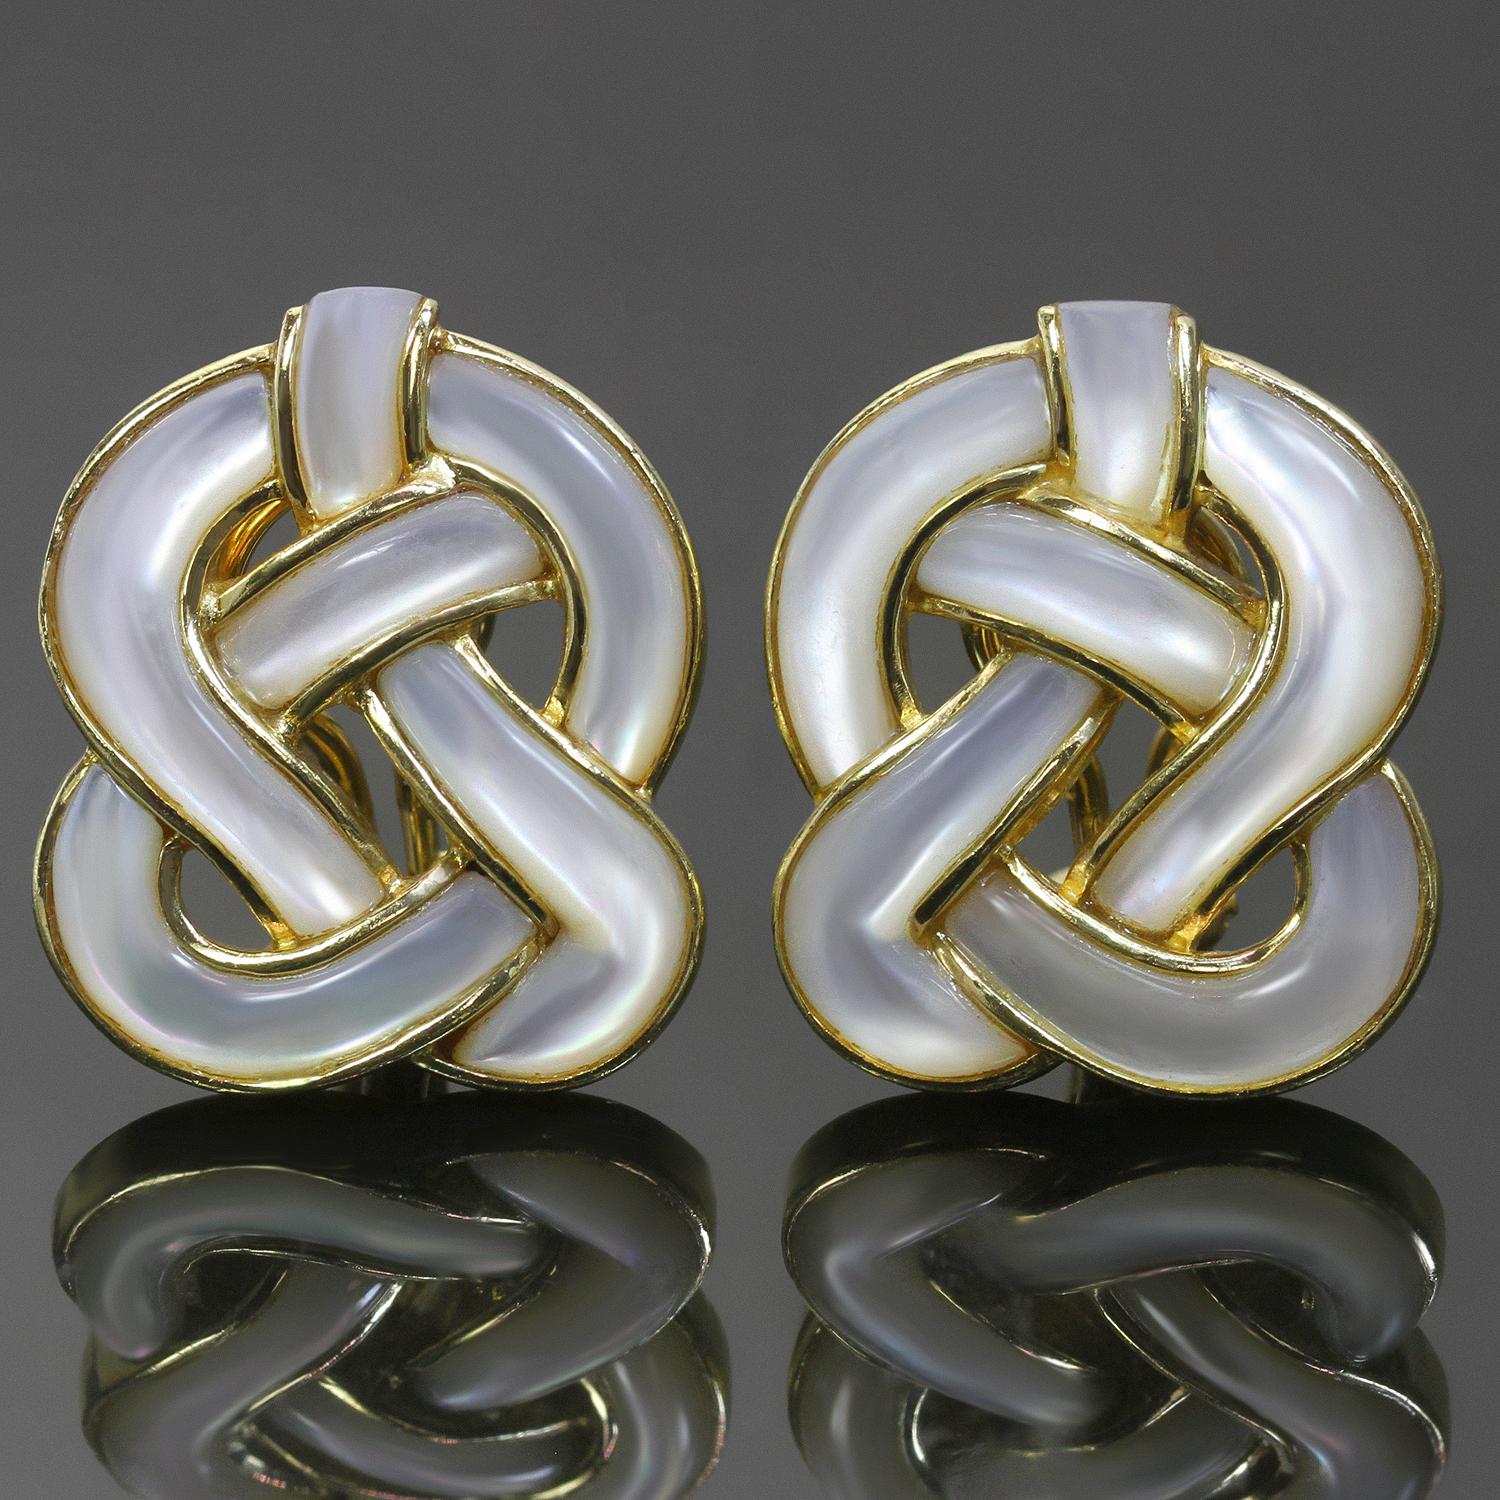 Diese klassischen Vintage-Ohrringe von Tiffany & Co. wurden von Angela Cummings entworfen und zeichnen sich durch ein elegantes geknotetes Design aus, das aus 18 Karat Gelbgold gefertigt und mit Perlmutt eingelegt ist. Weist normale Gebrauchsspuren